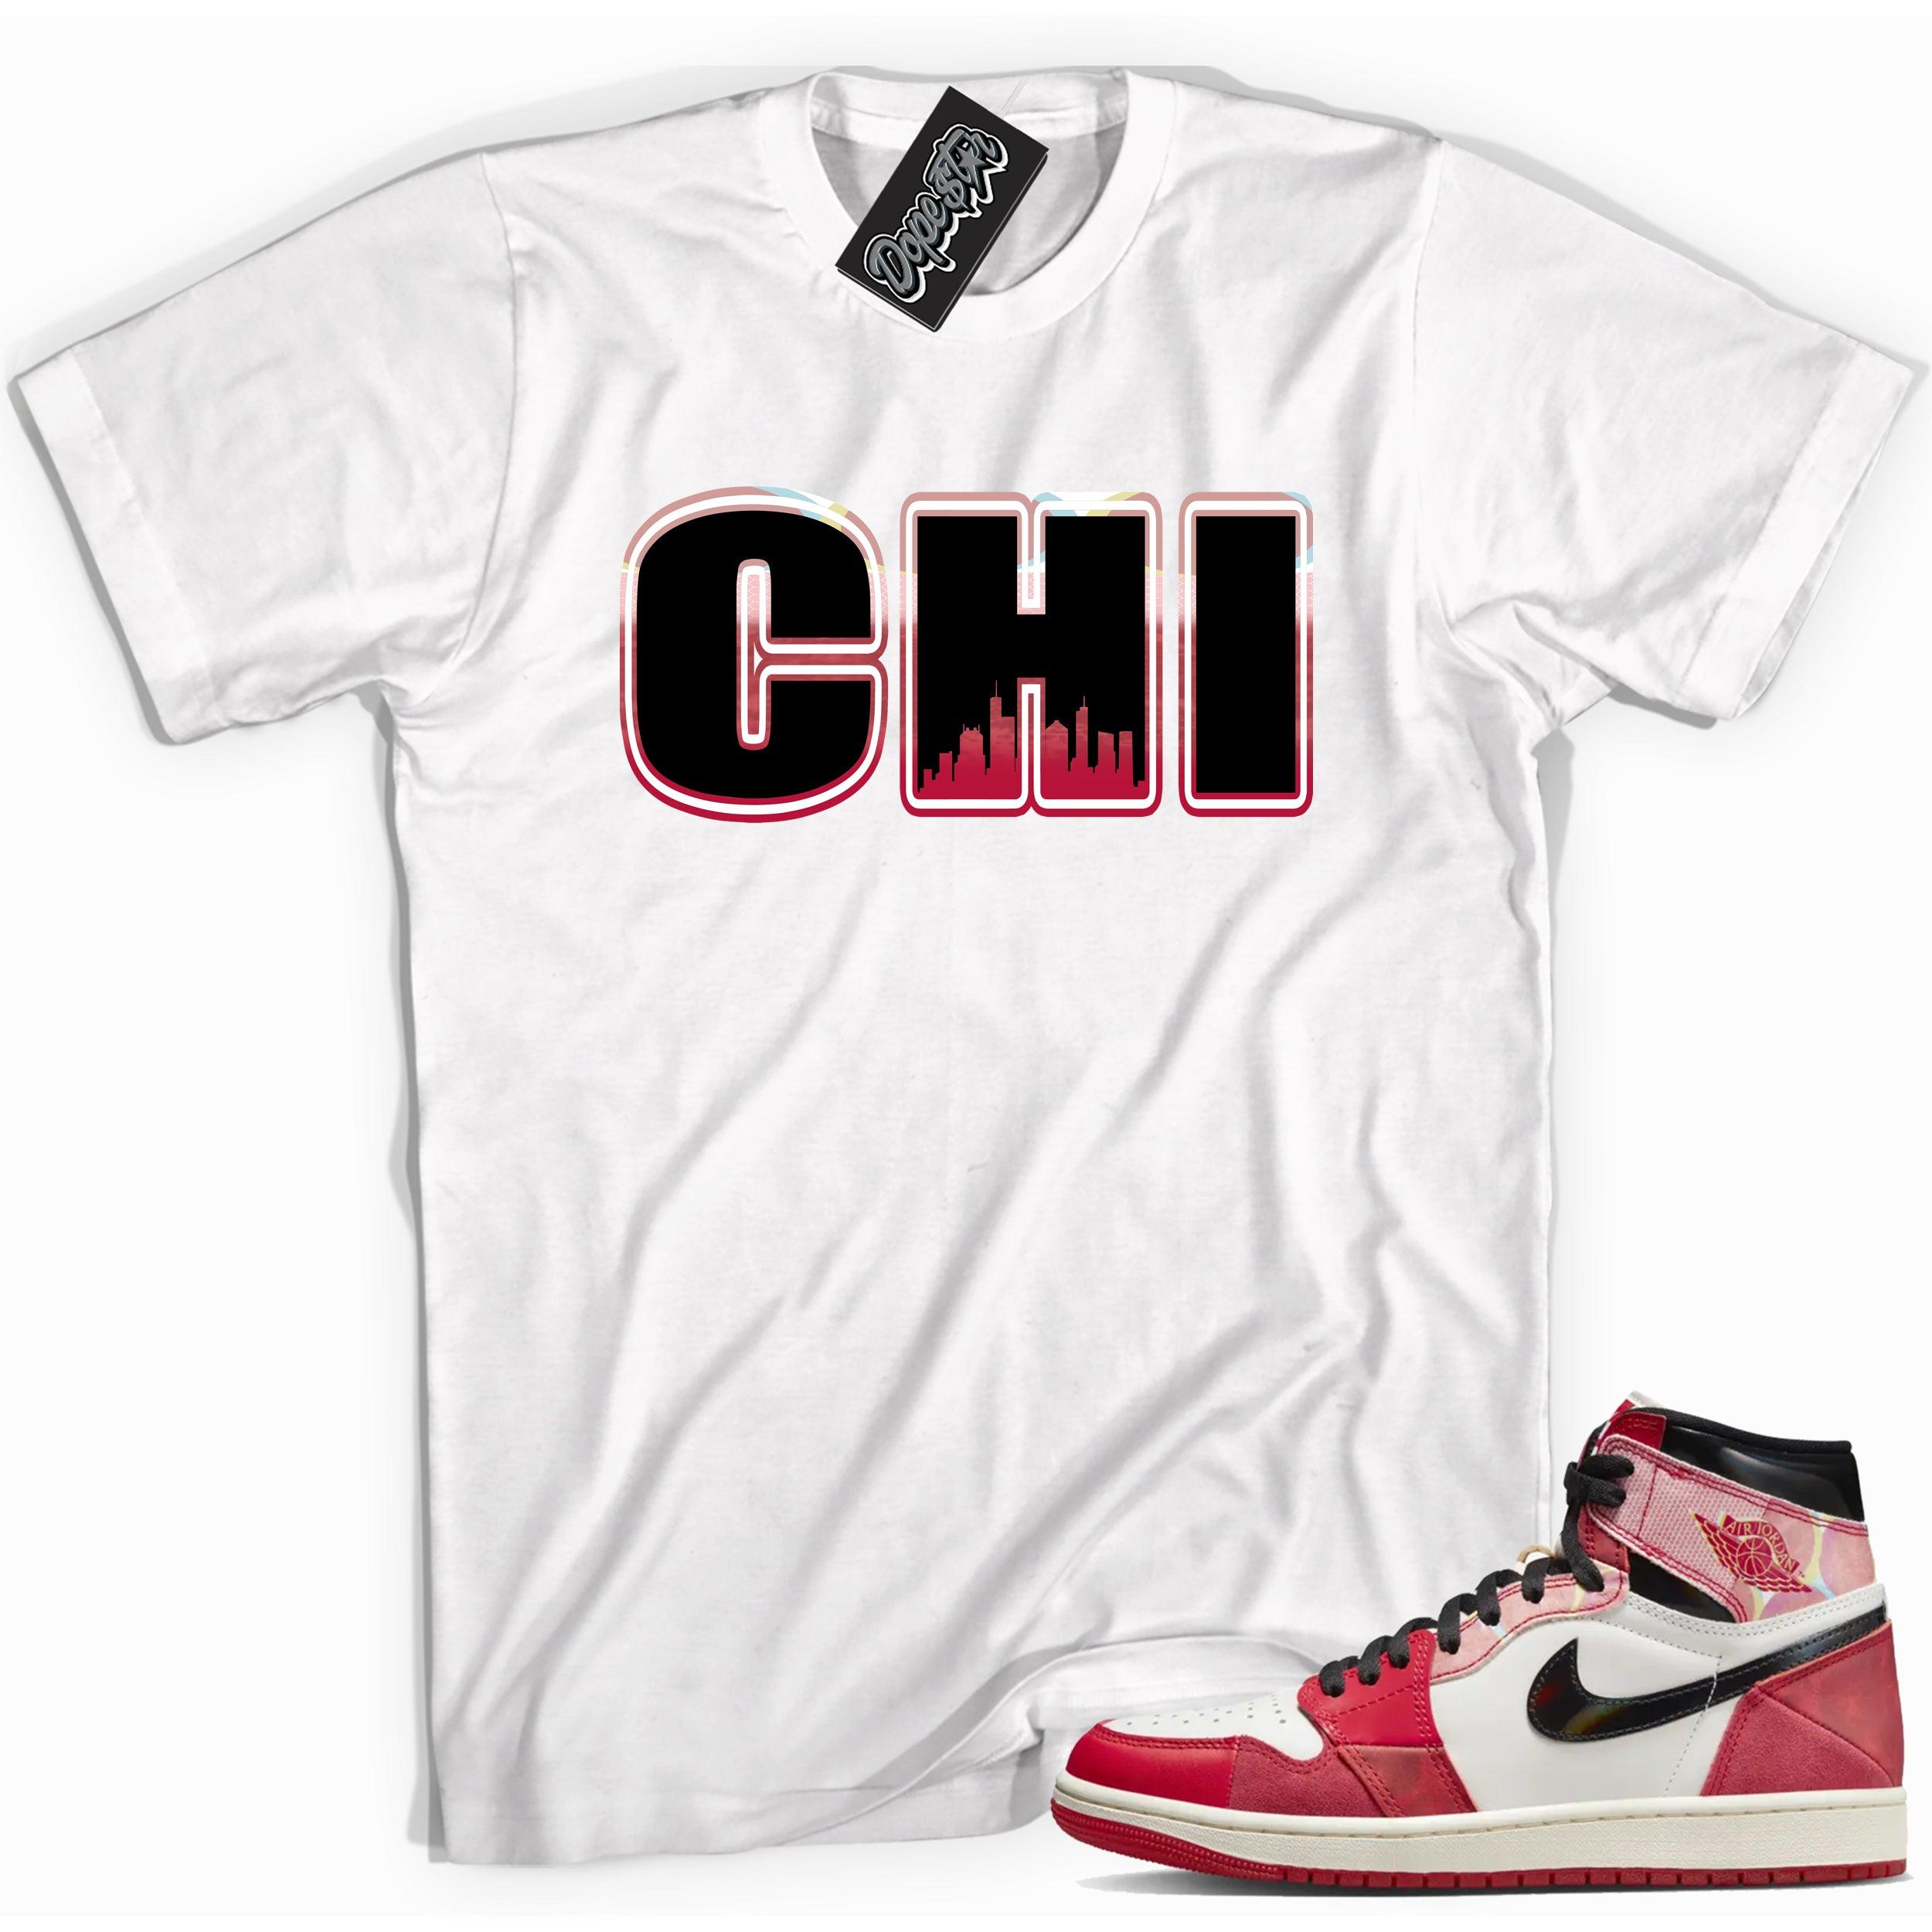 AIR JORDAN 1 SPIDER-VERSE Shirt - Chicago - Sneaker Shirts Outlet